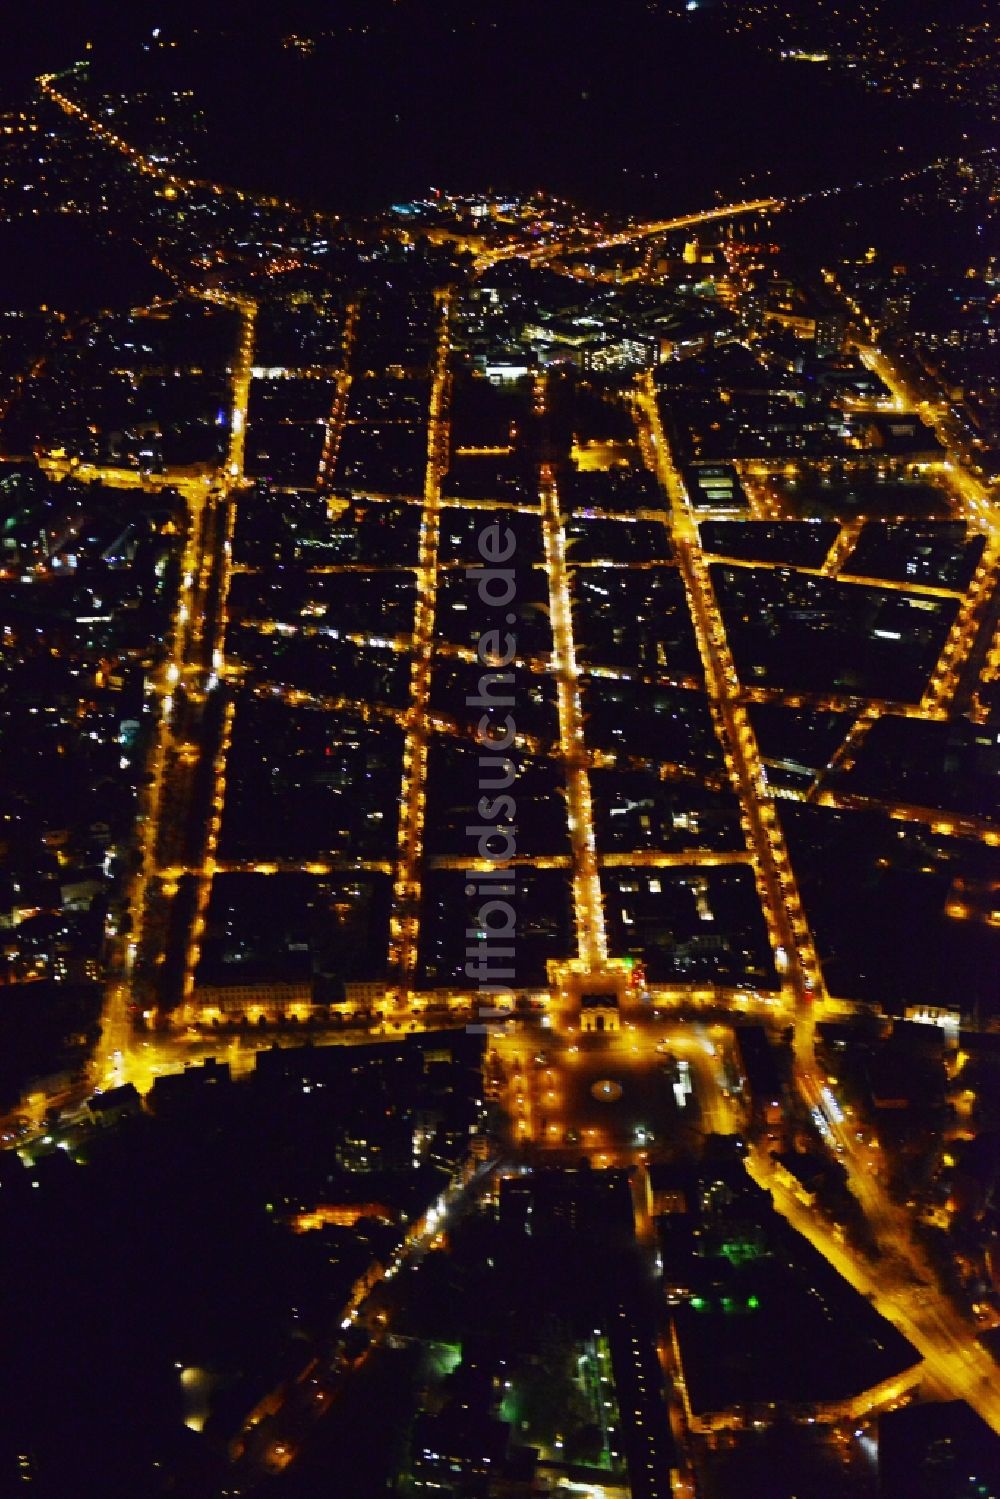 Nacht-Luftaufnahme Potsdam - Nachtluftbild von Potsdam im Bundesland Brandenburg